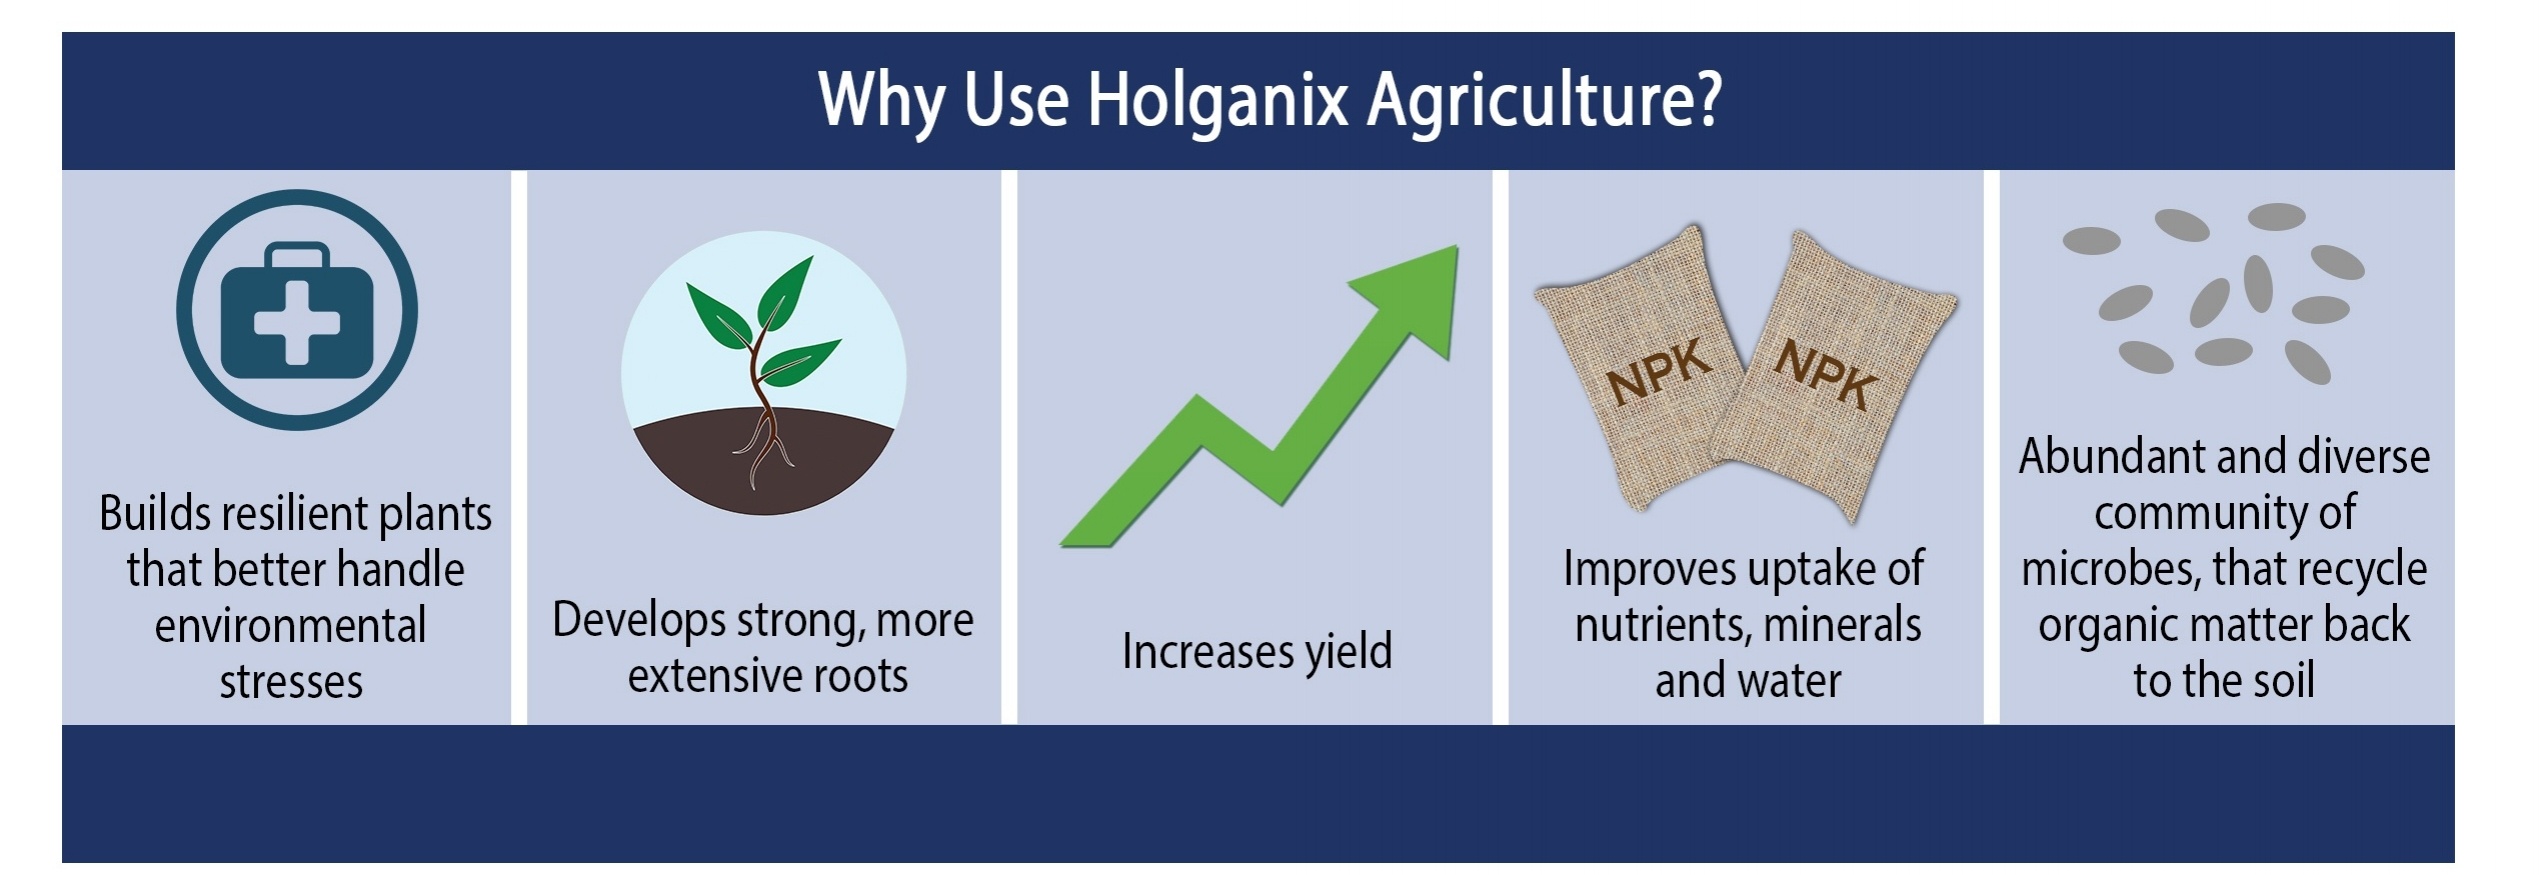 Why use Holganix-587110-edited